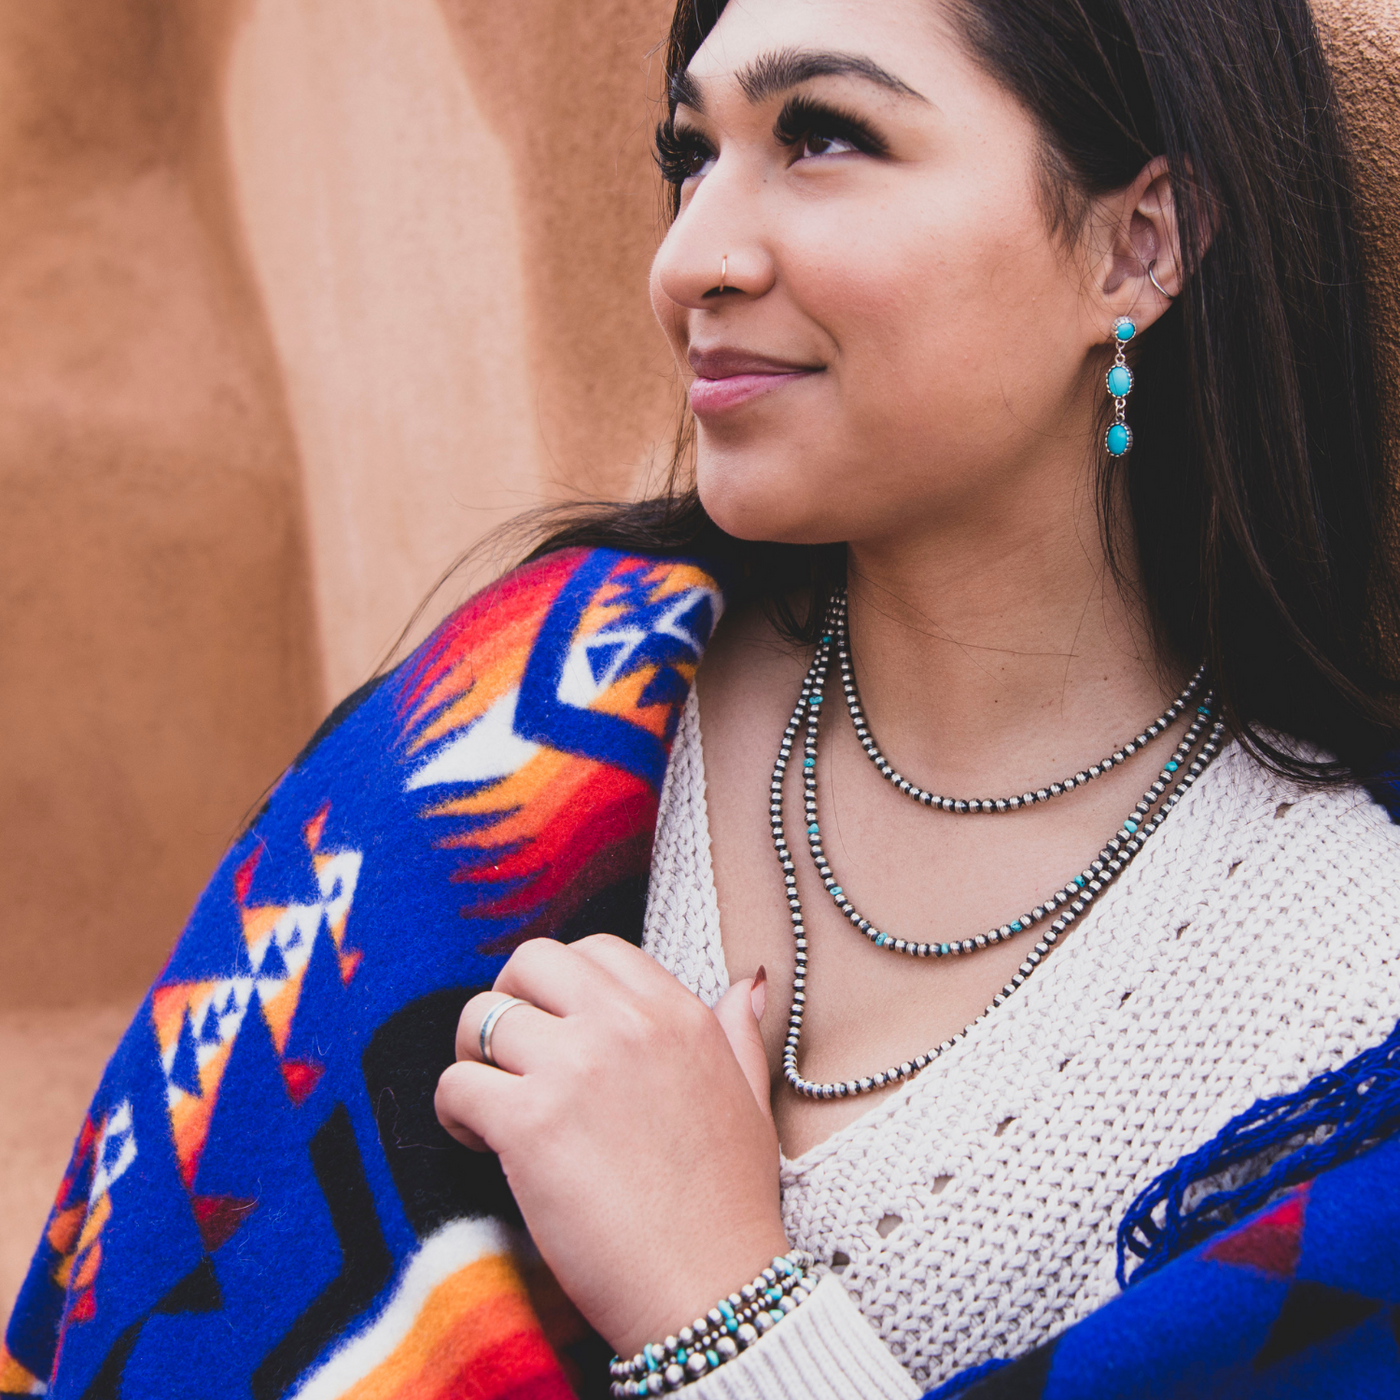 Navajo Pearls Silver Bead Necklace